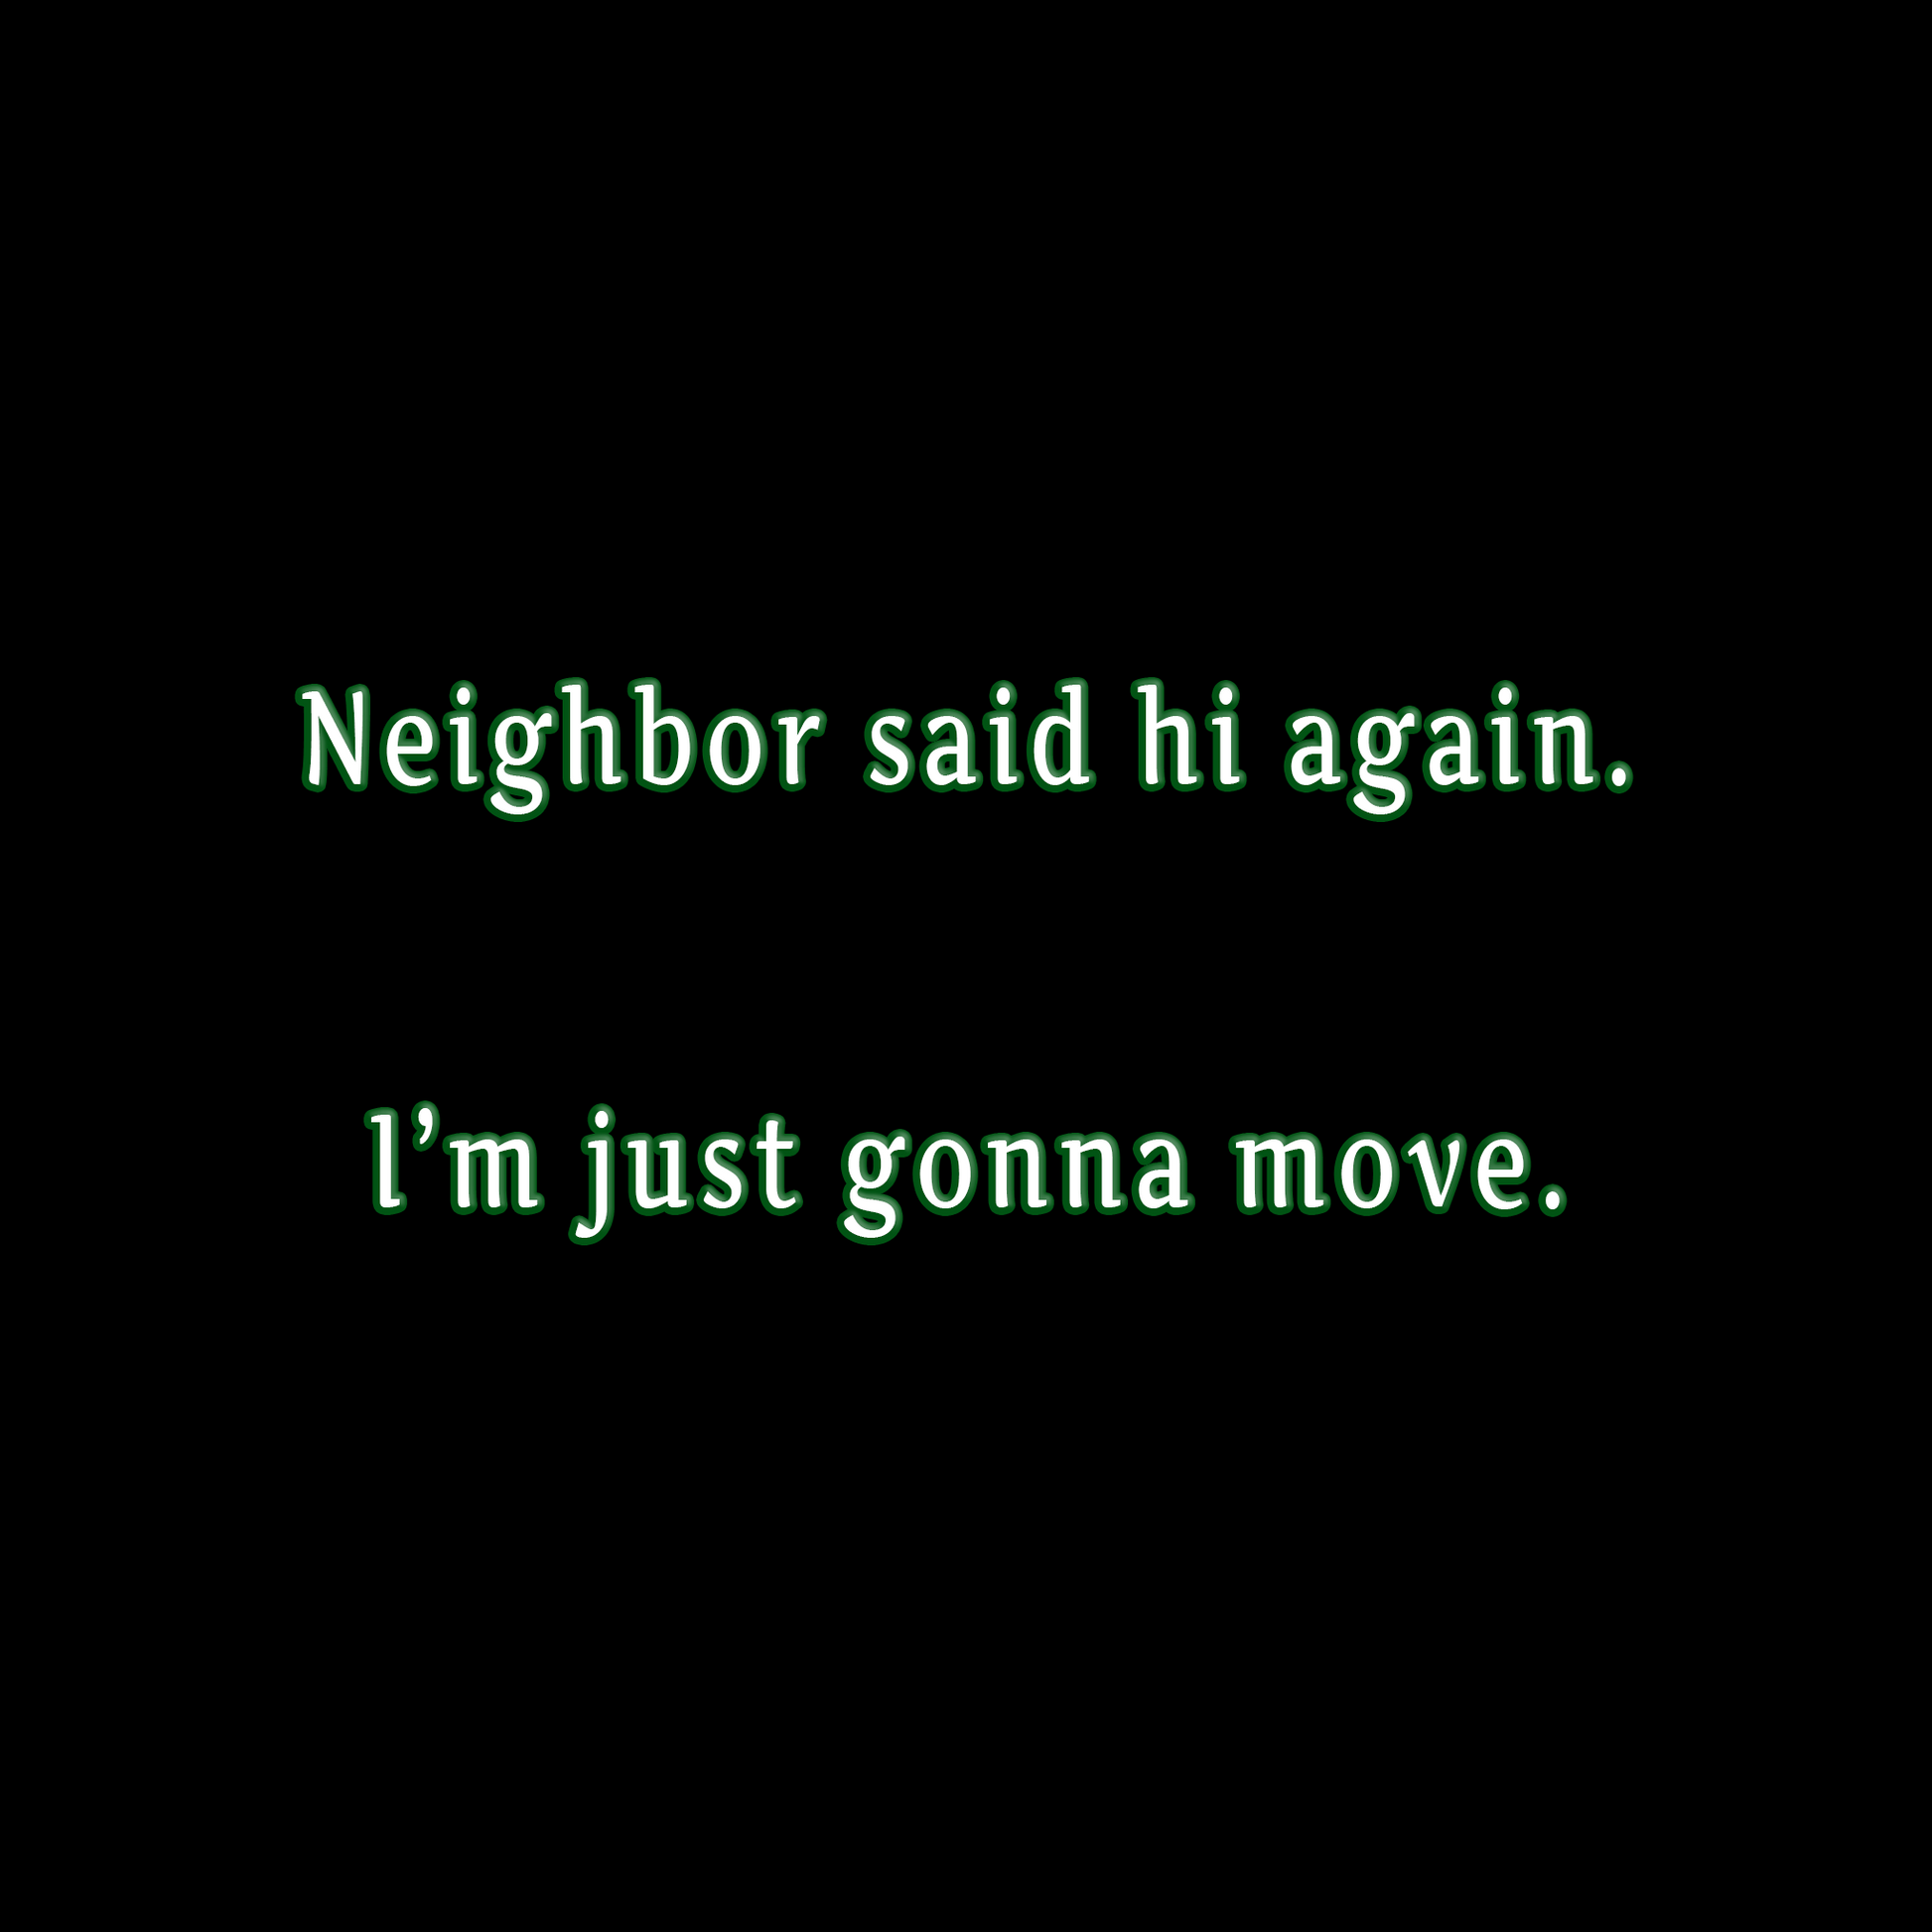 "Neighbor said hi again. I'm just gonna move."